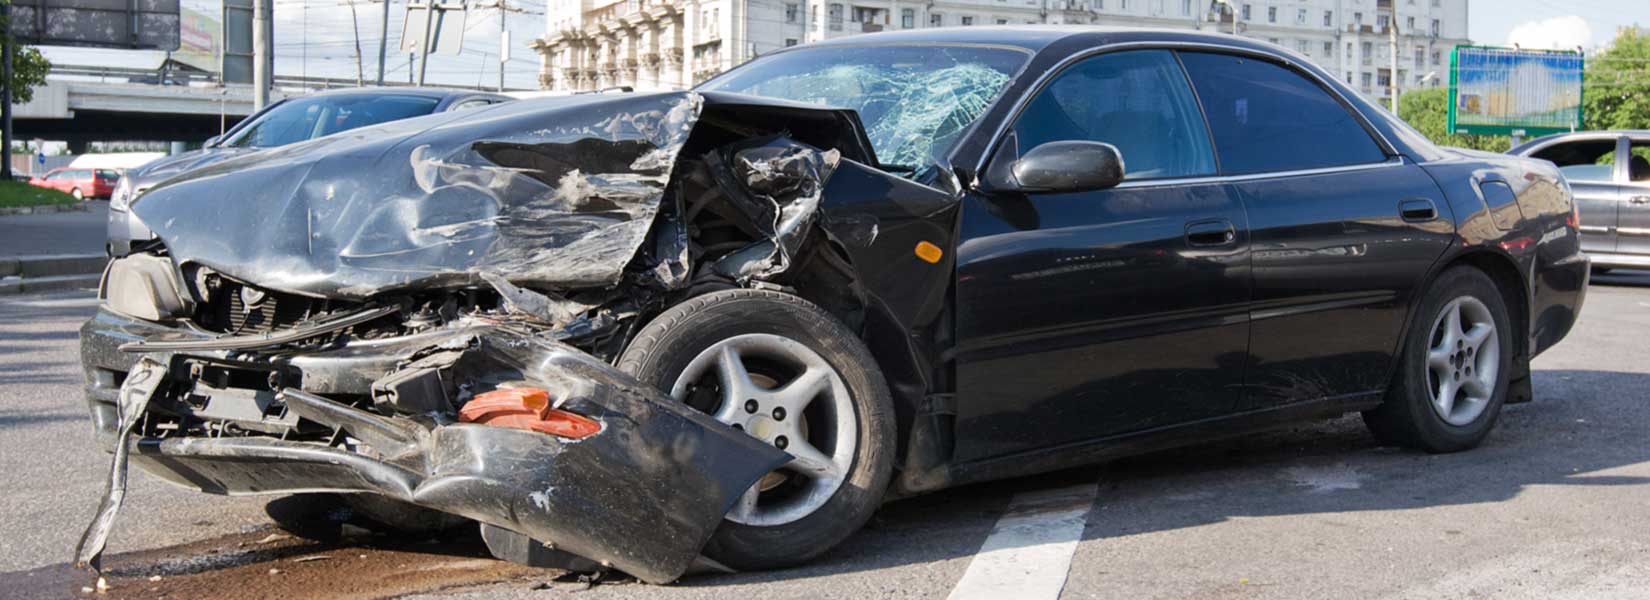 Consequences of Serious Car Wrecks